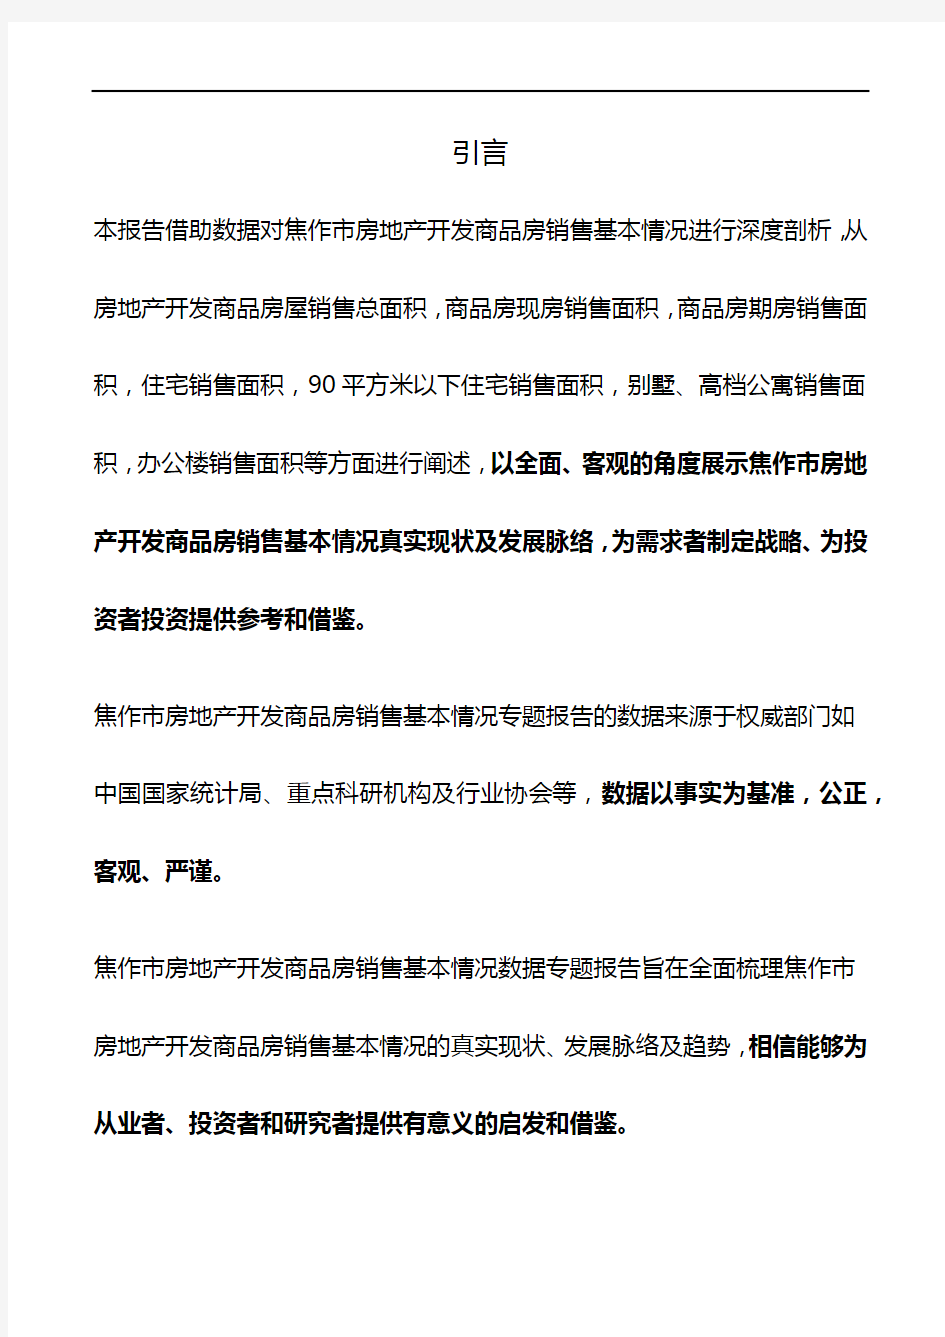 河南省焦作市房地产开发商品房销售基本情况数据专题报告2019版